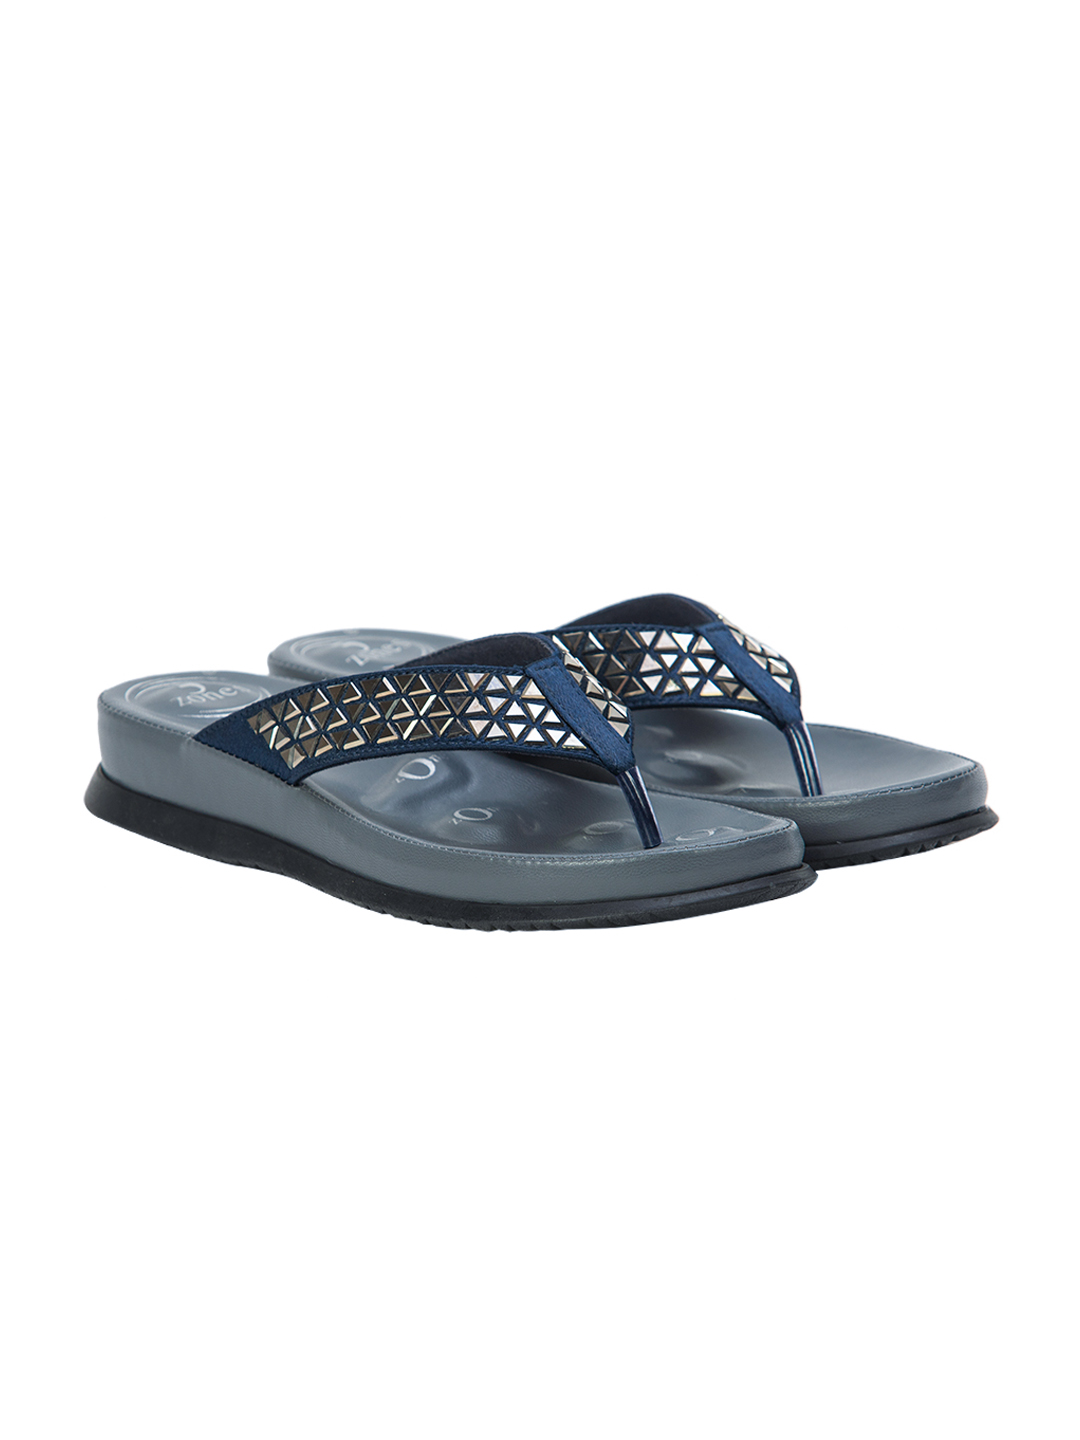 Buy Von Wellx Germany Comfort Beam Blue Slippers Online in Chandigarh